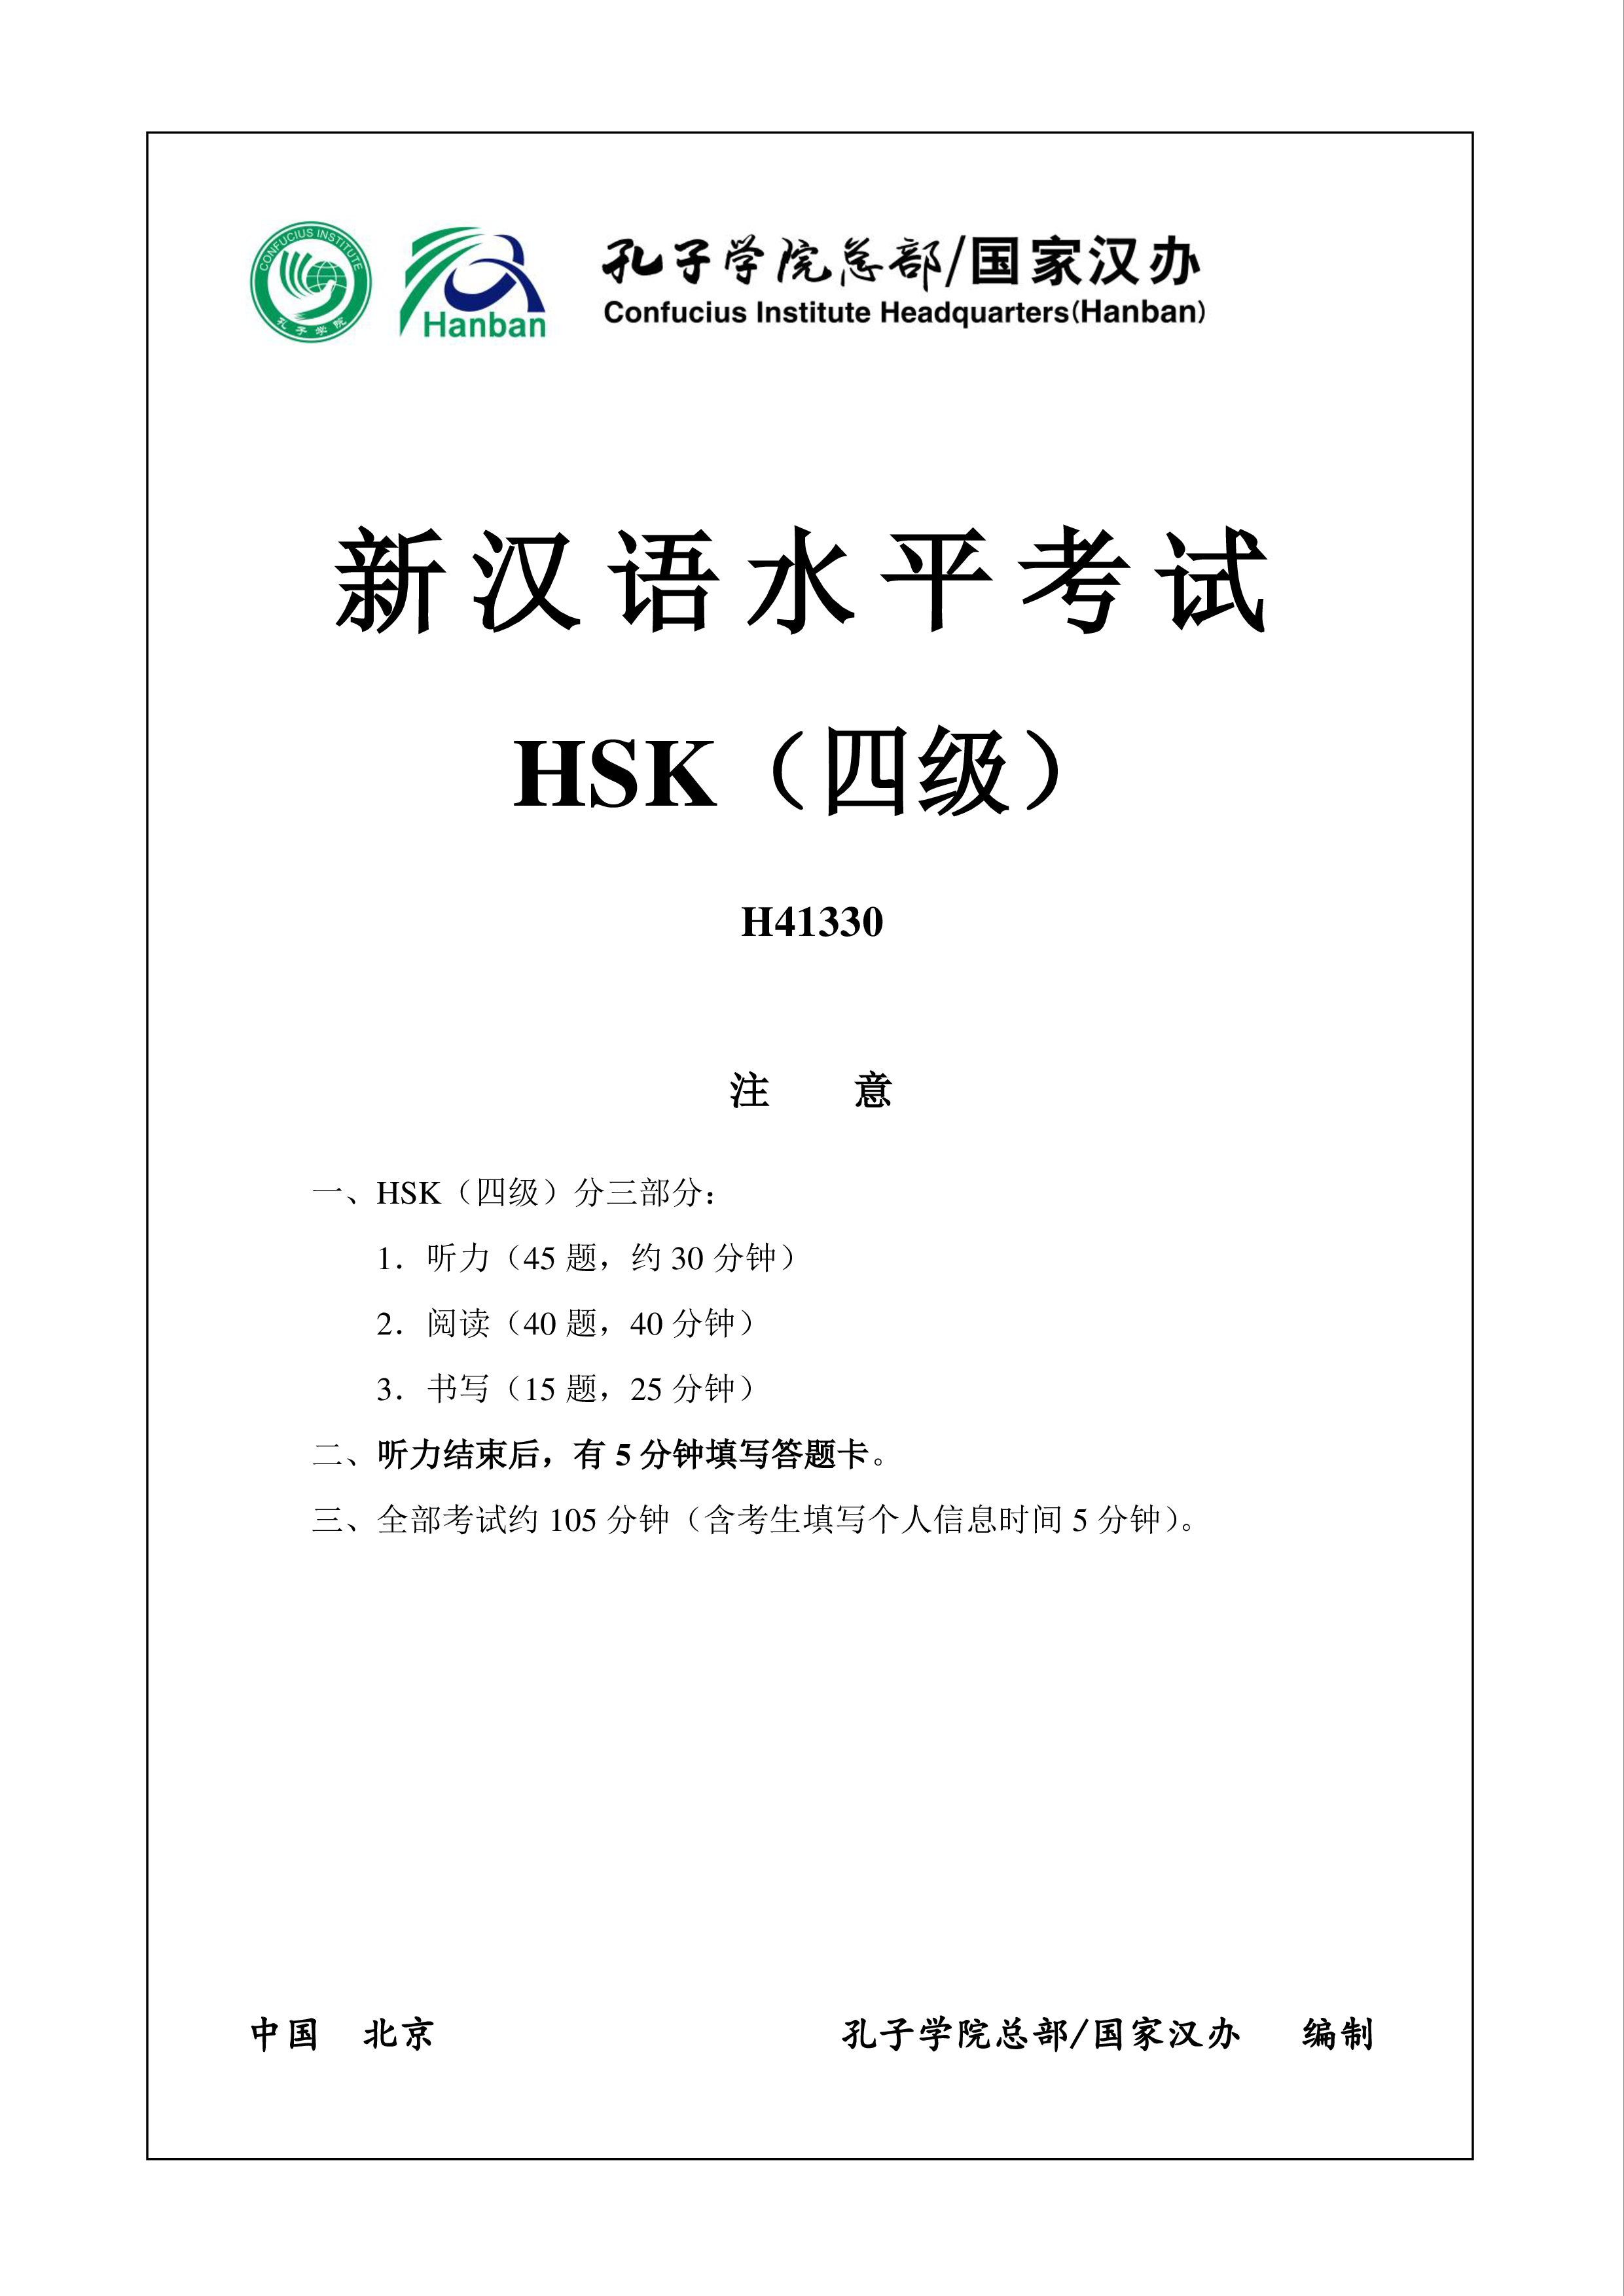 hsk4 chinees examen h41330 template